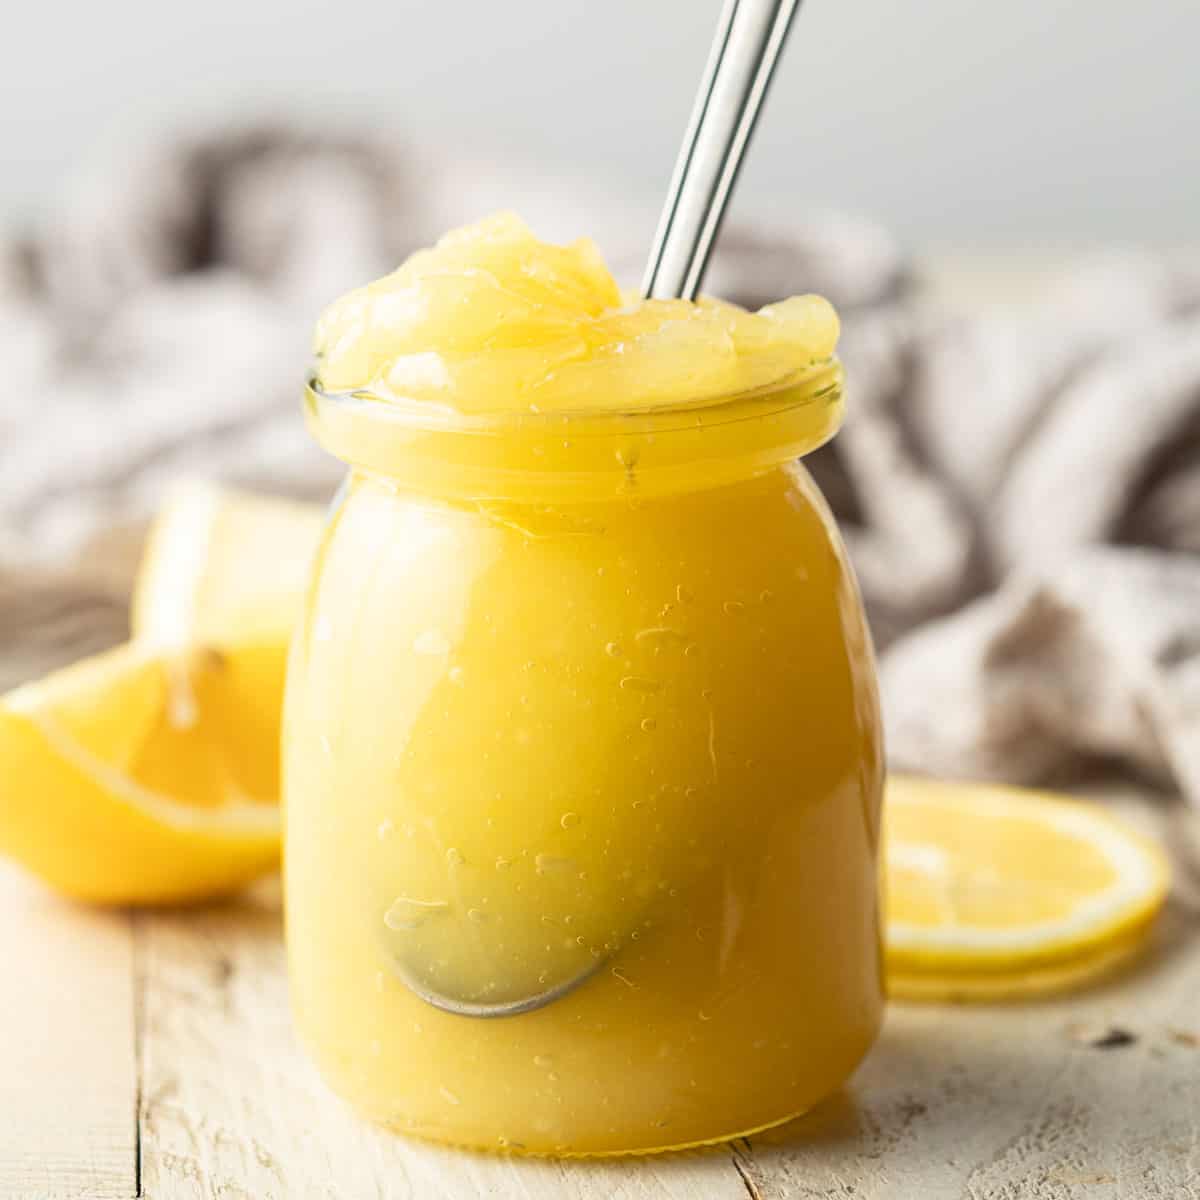 Jar of Vegan Lemon Curd with a spoon in it.